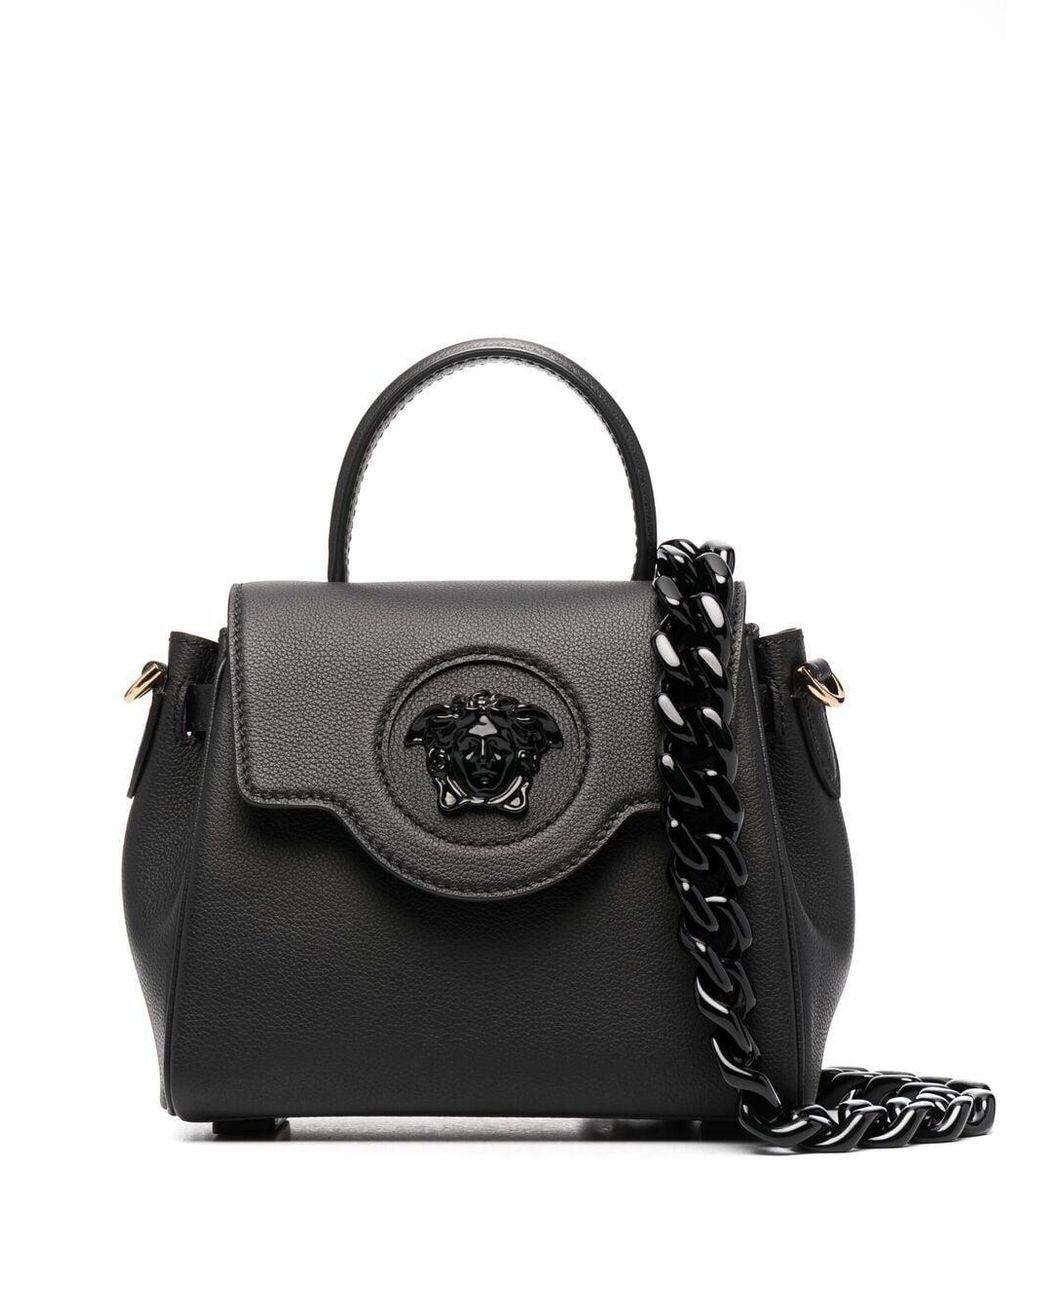 Versace Leather La Medusa Shoulder Bag in Black - Lyst